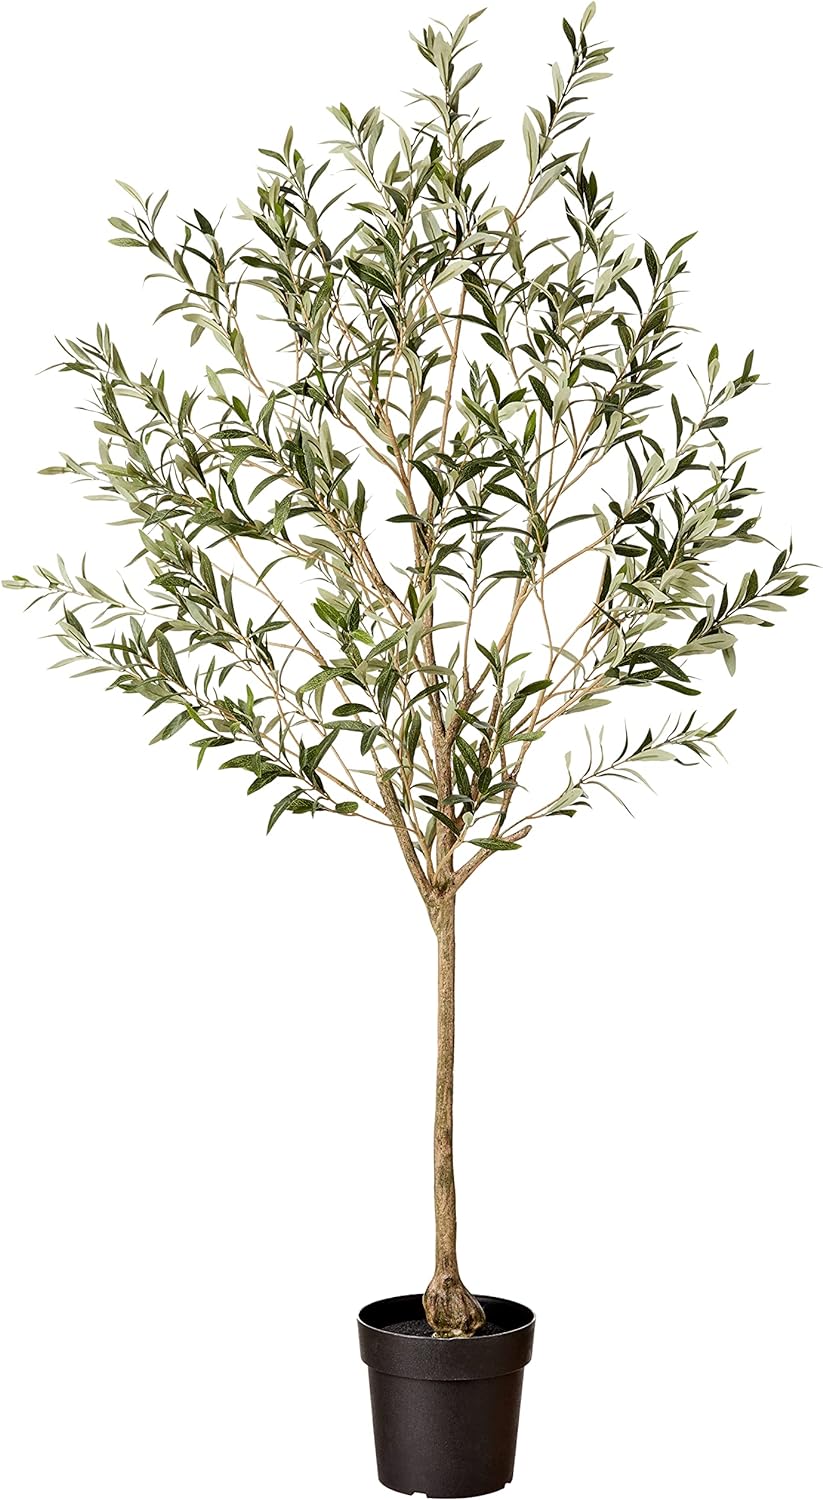 شجرة الزيتون الصناعية، طبق الأصلية